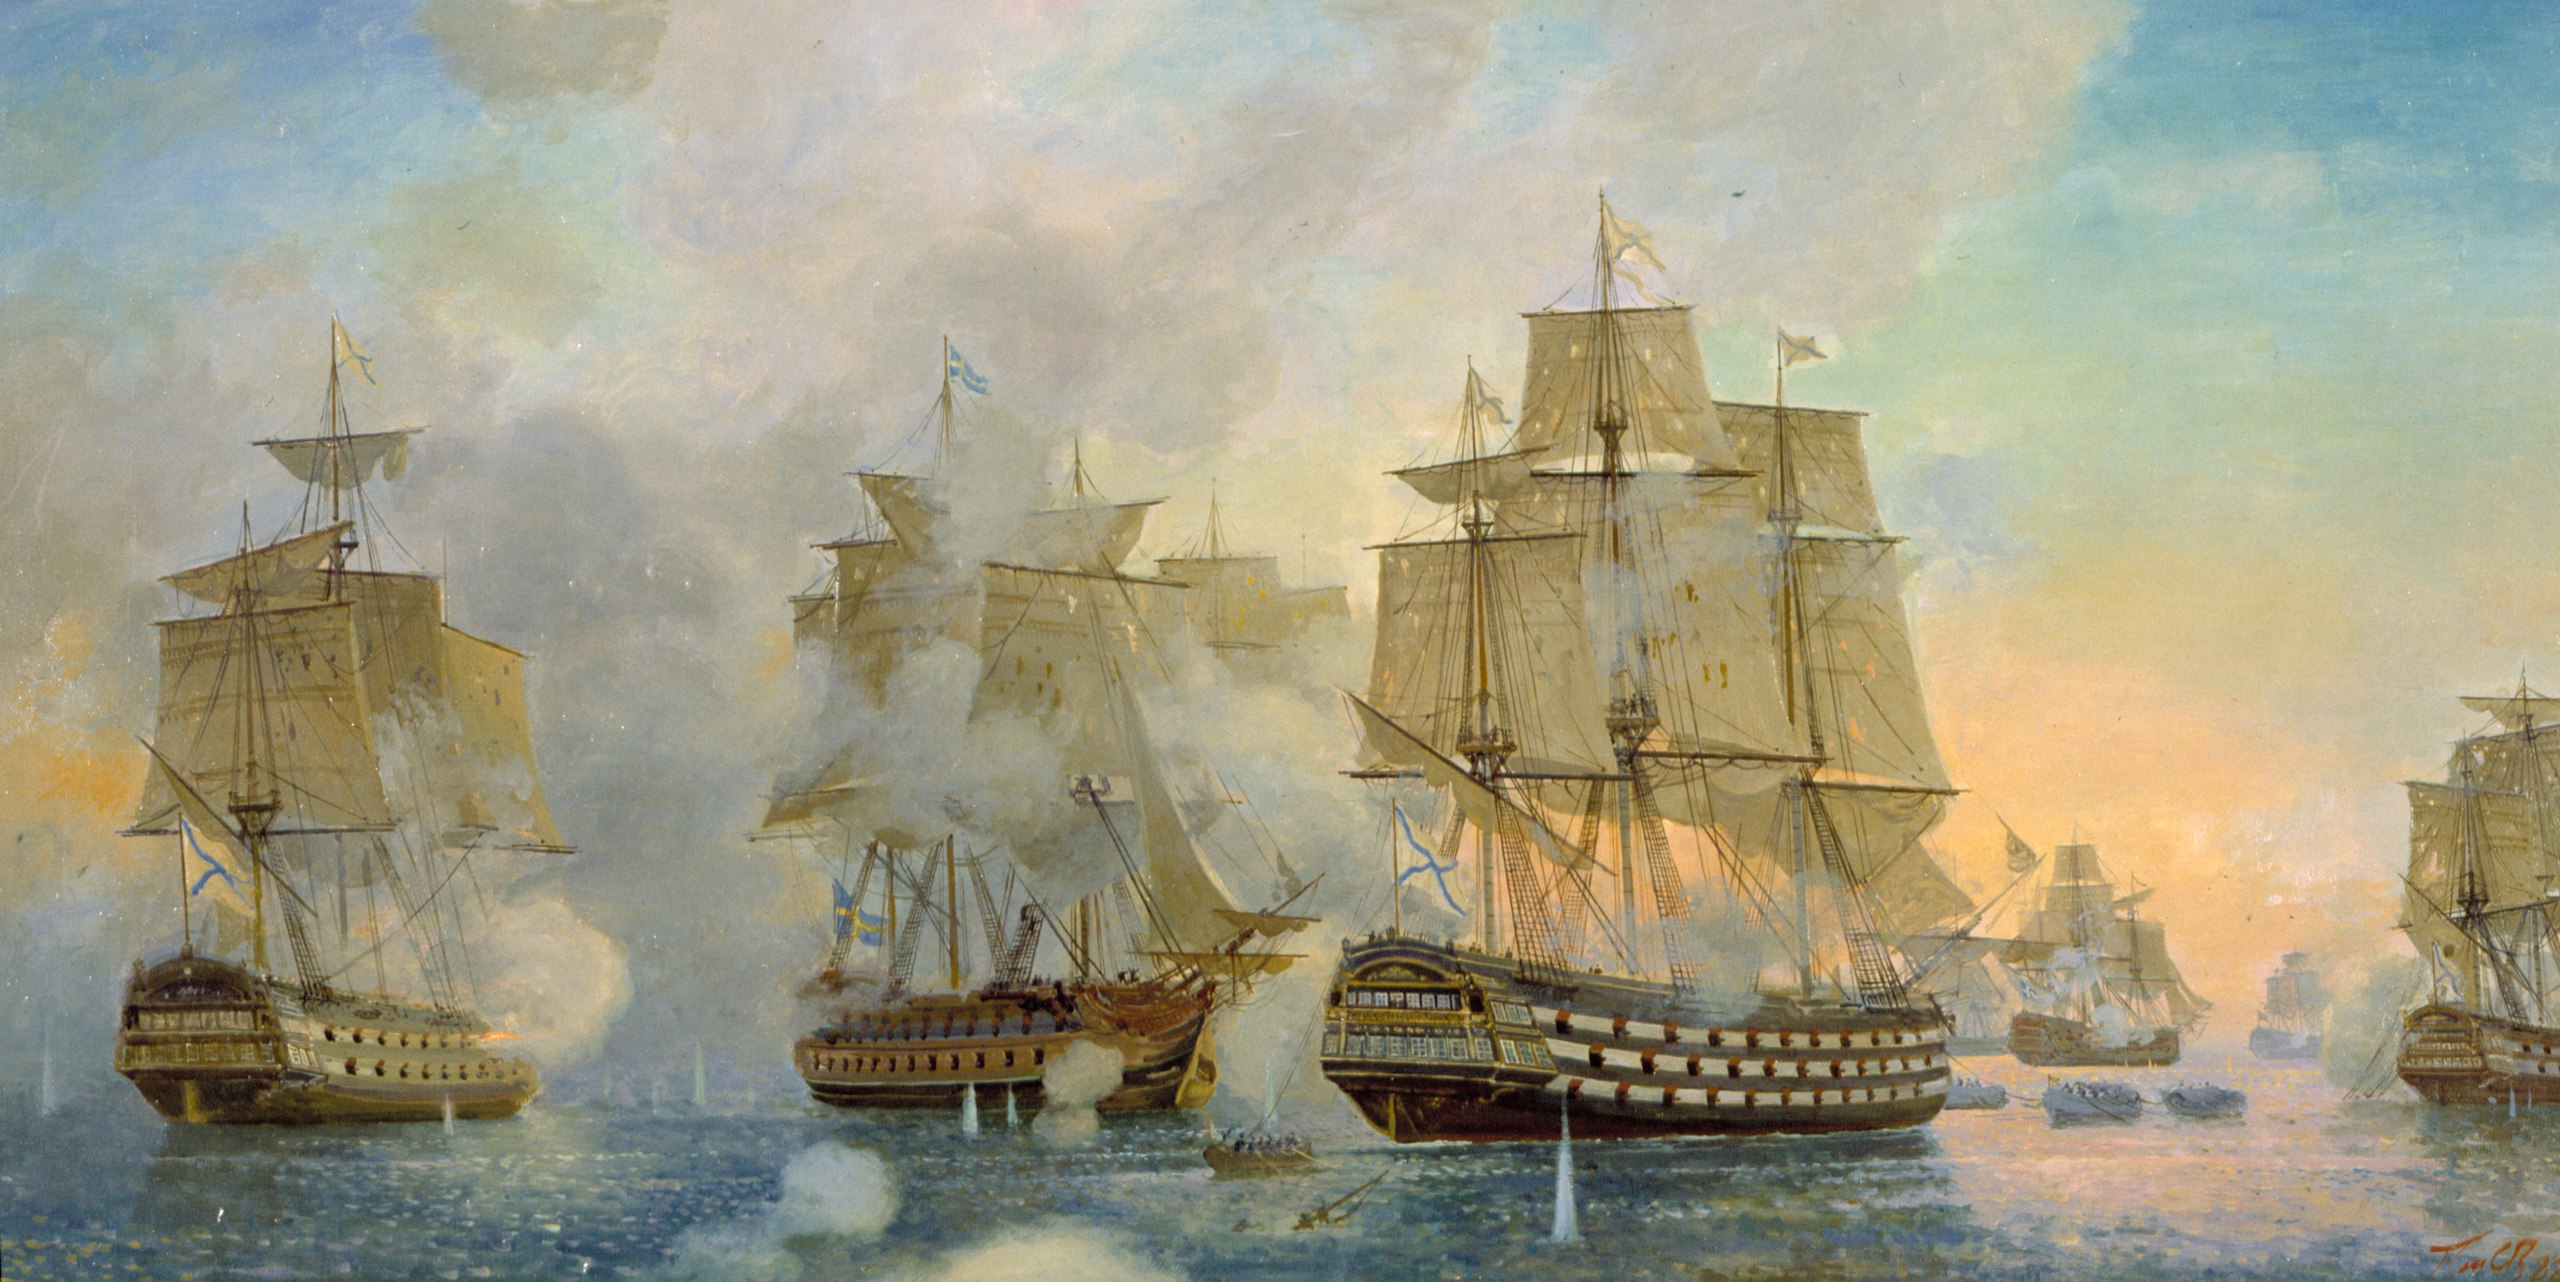 Сражения флота петра 1. Гогландское сражение 1788. Сражение у острова Гогланд в 1788. Гогландское Морское сражение 1788 г..